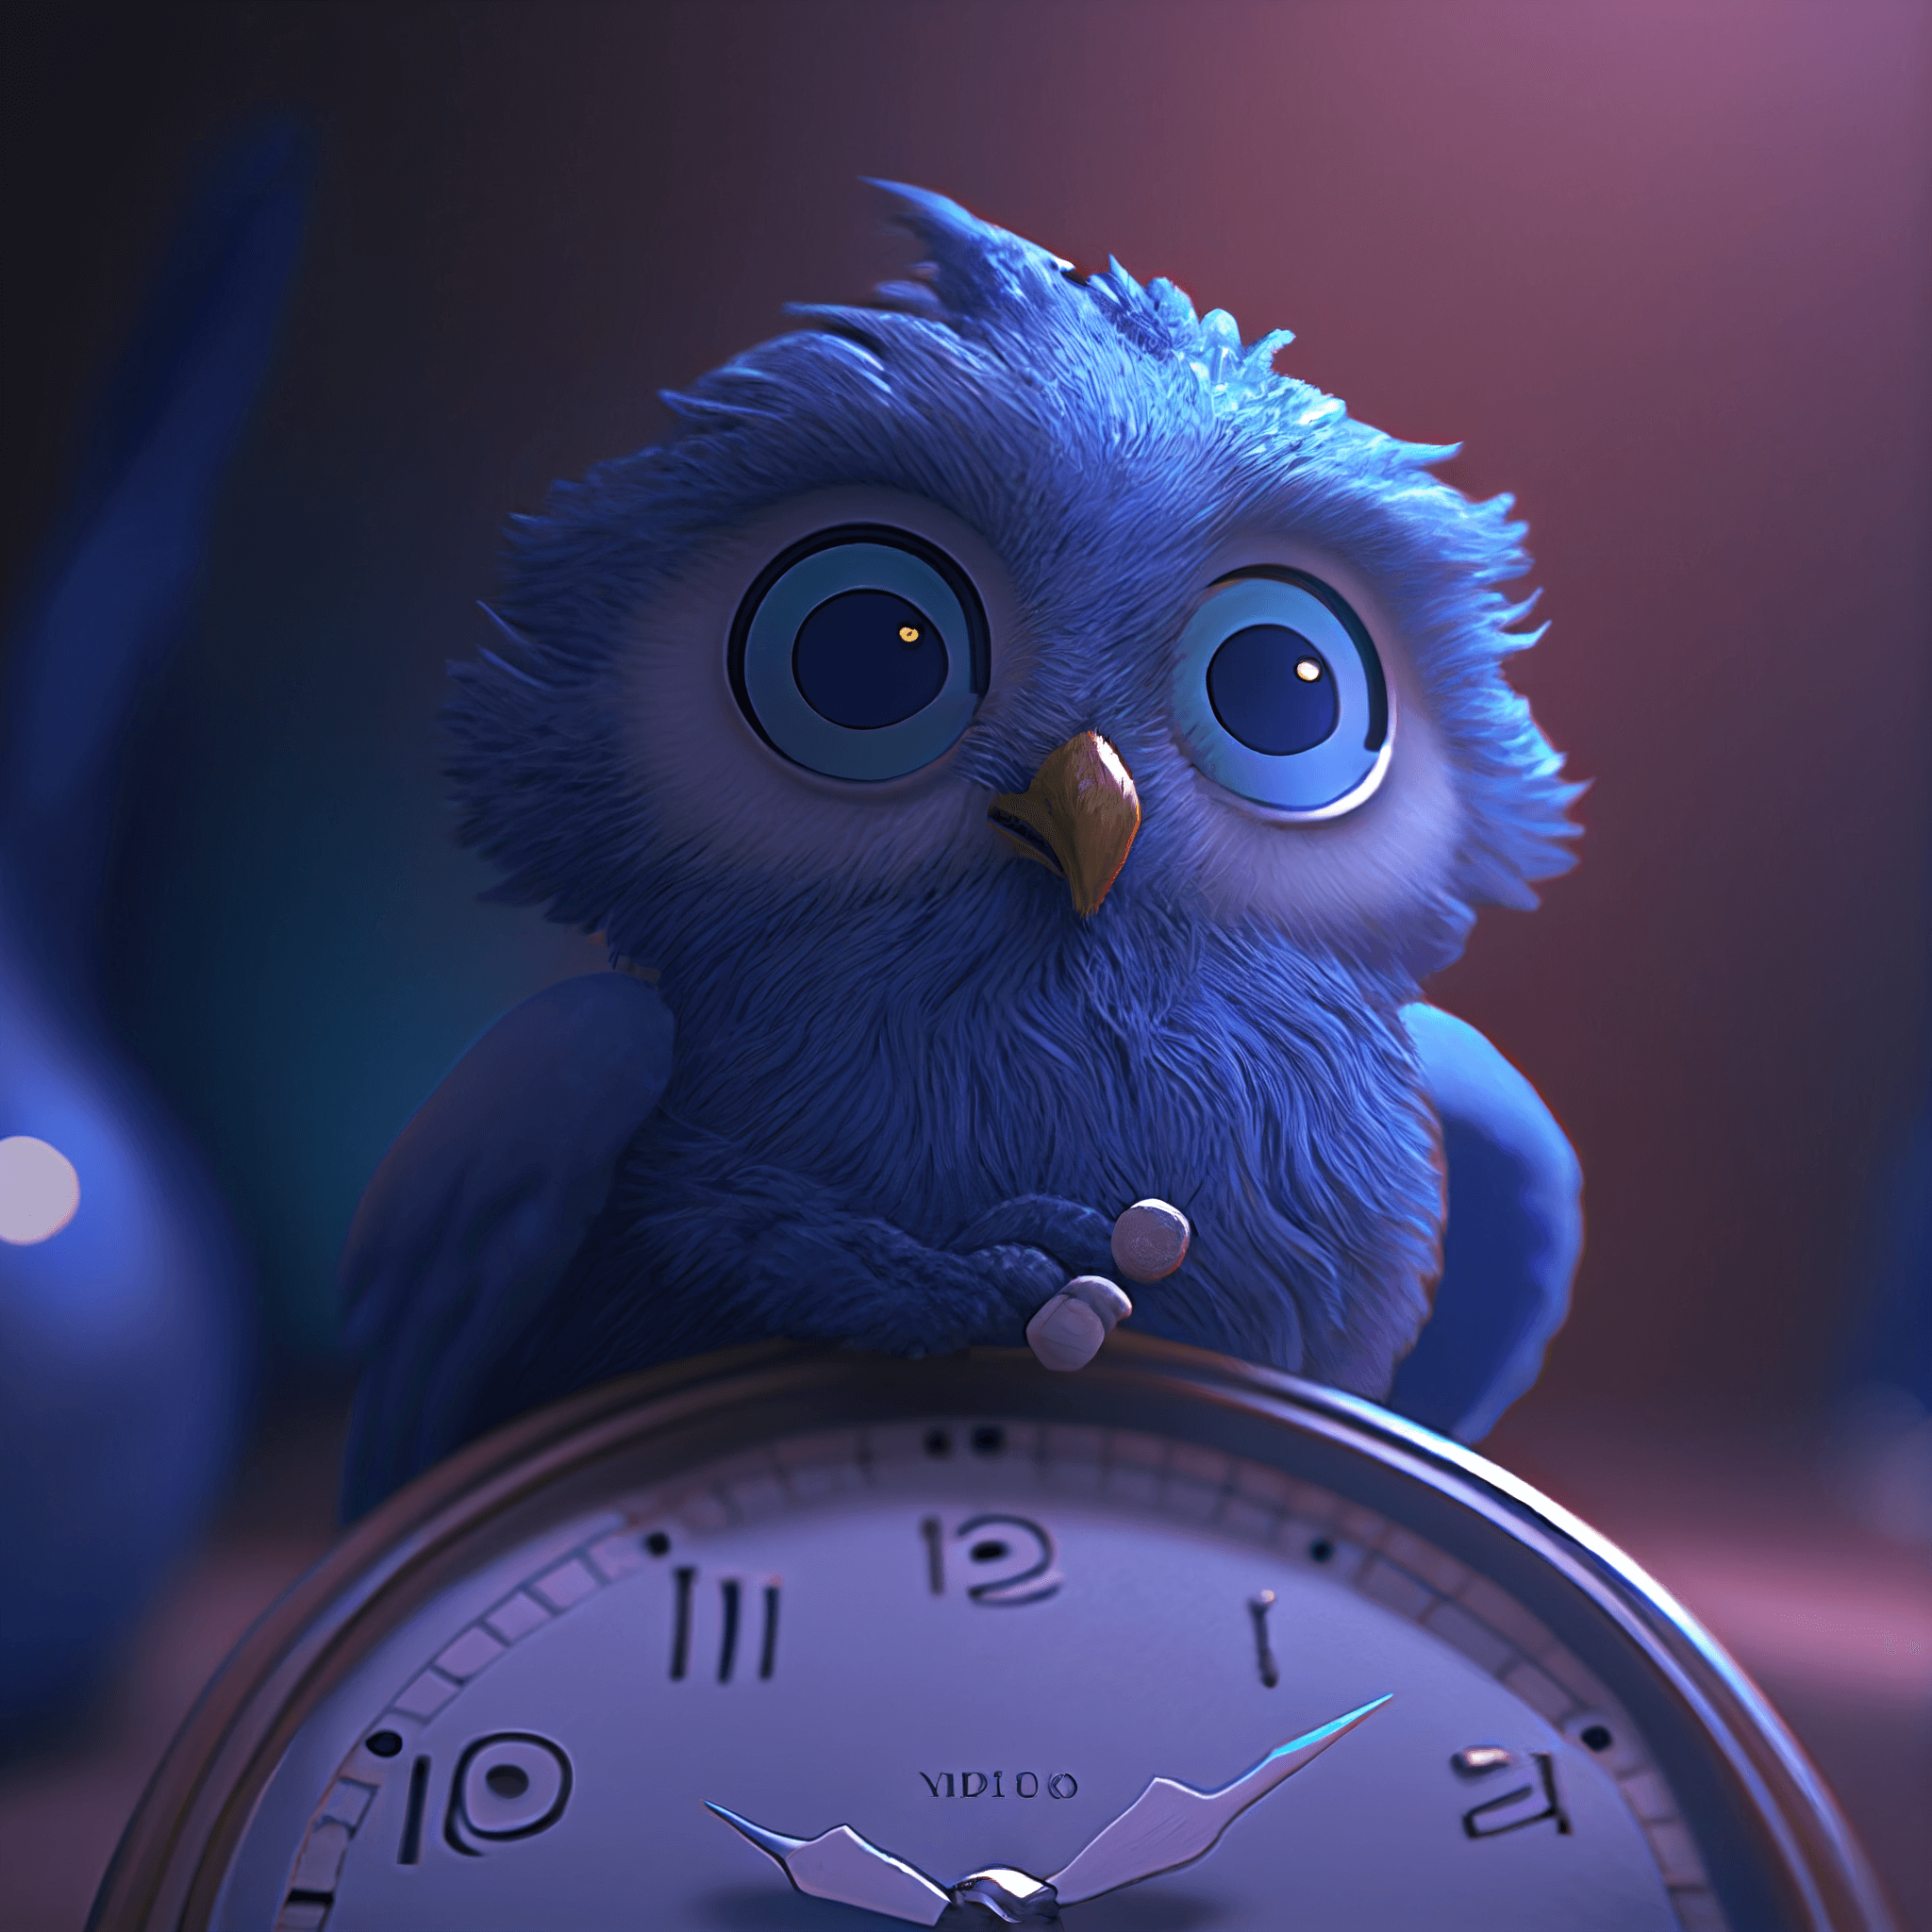 A cute owl on a clock